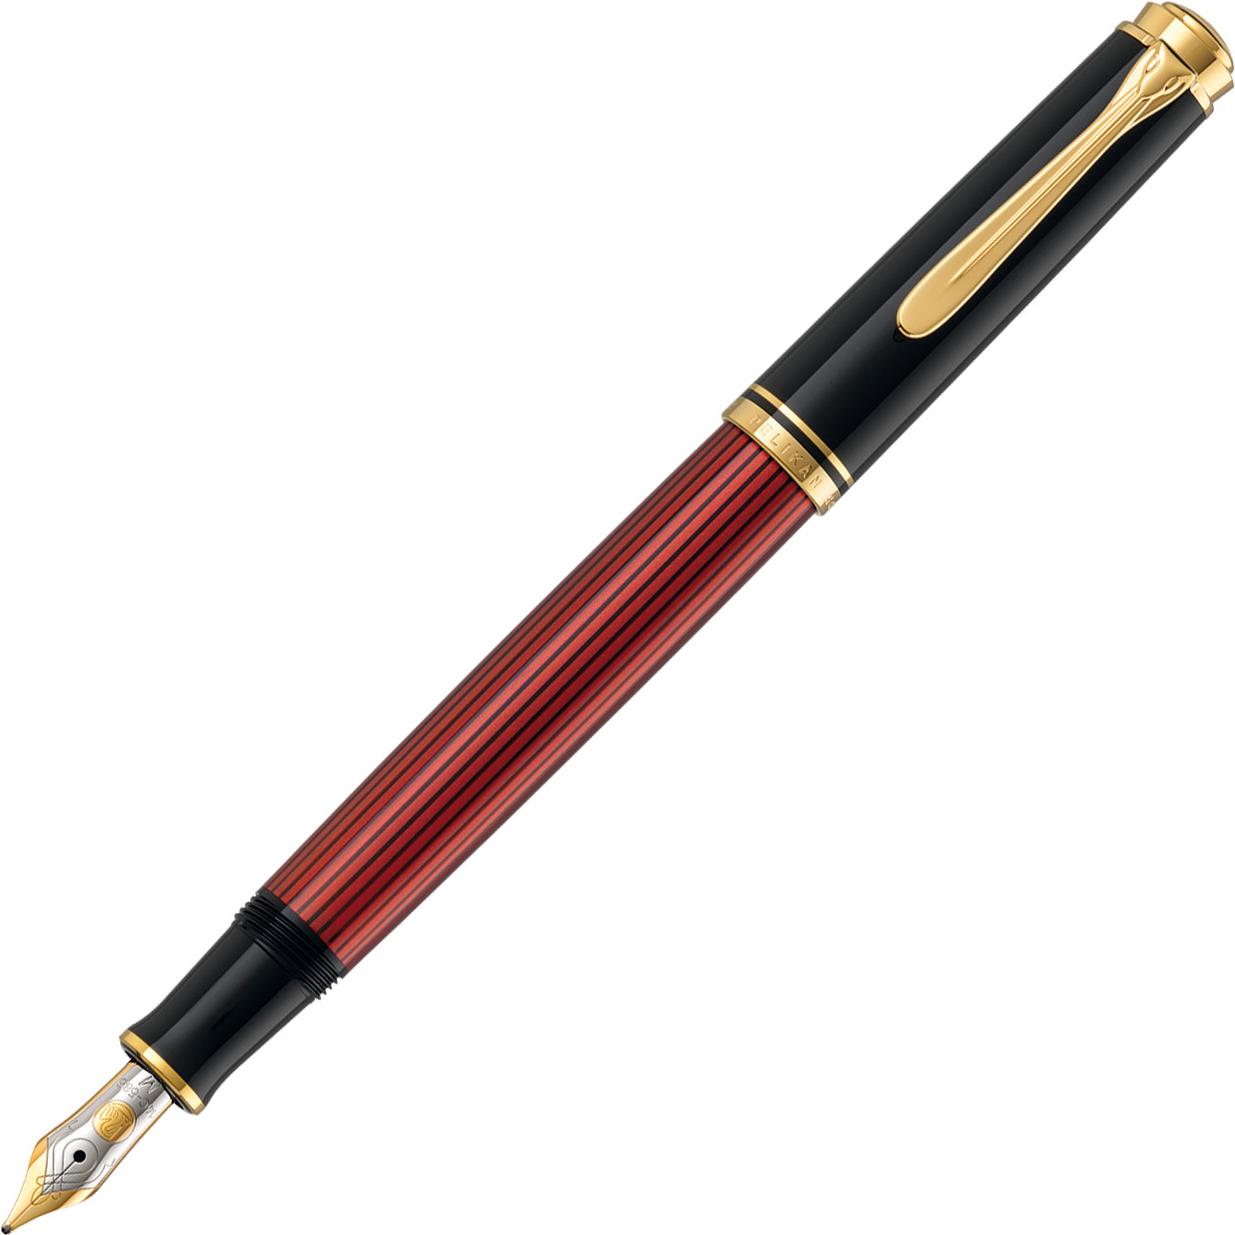 Pelikan M400 Produktfarbe: Schwarz, Gold, Rot, Tintenfüllsystem: Integriertes Befüllsystem, Federform: Kursiv nib